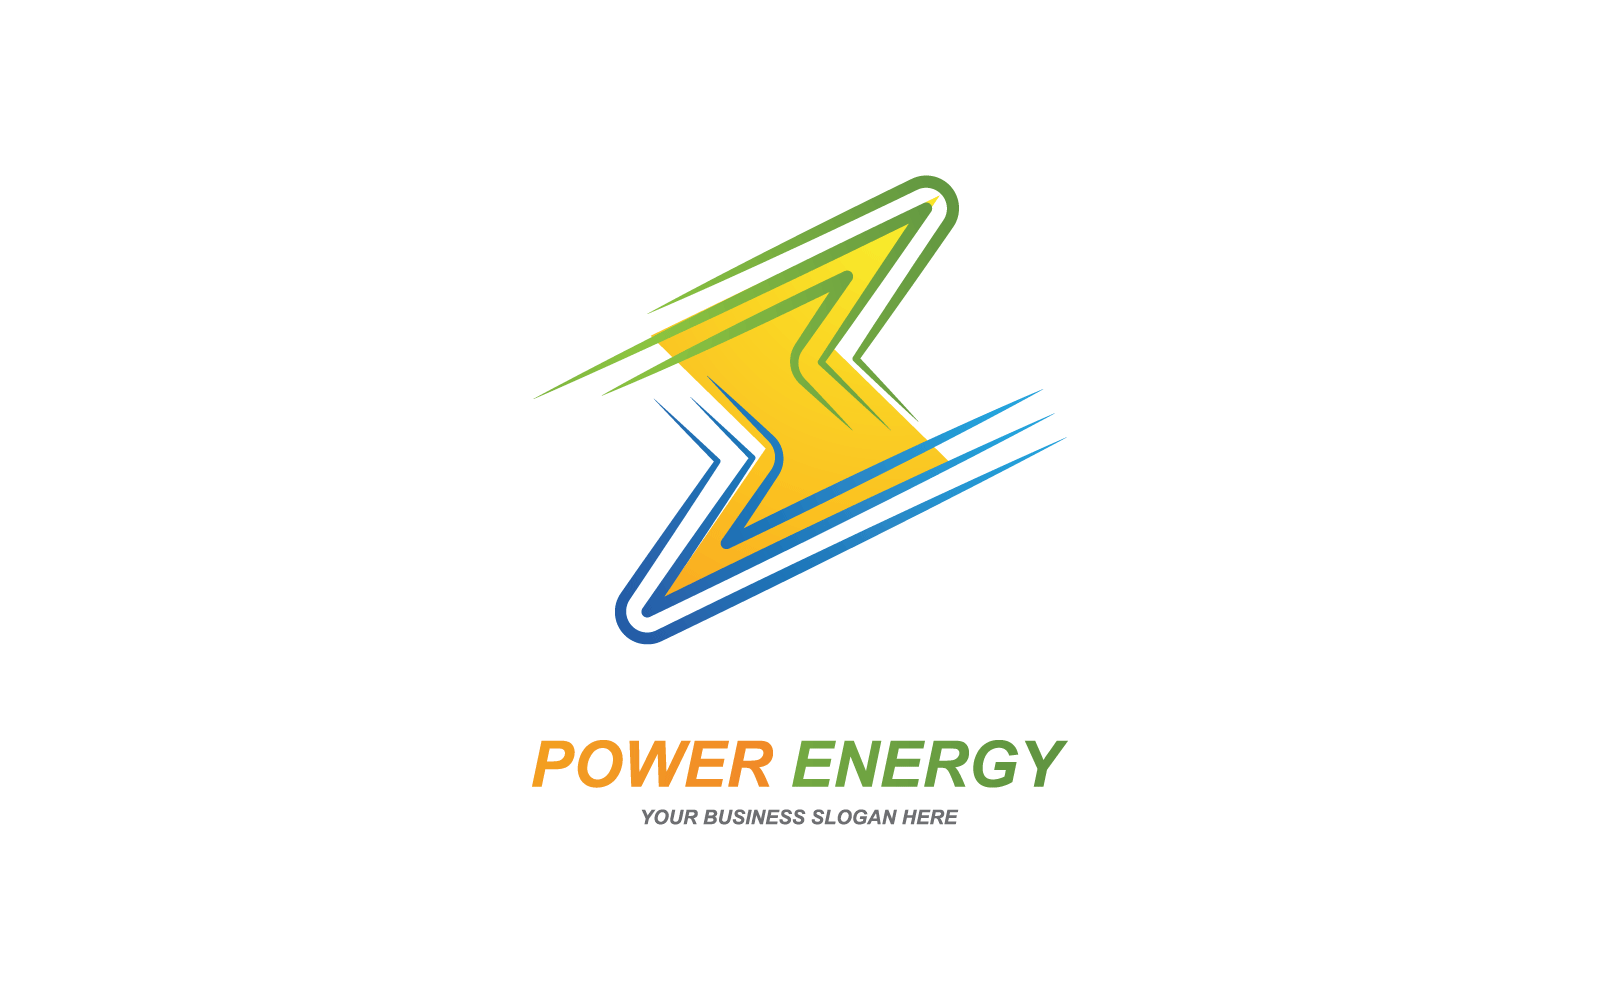 Power lightning power energy logo vector template Logo Template